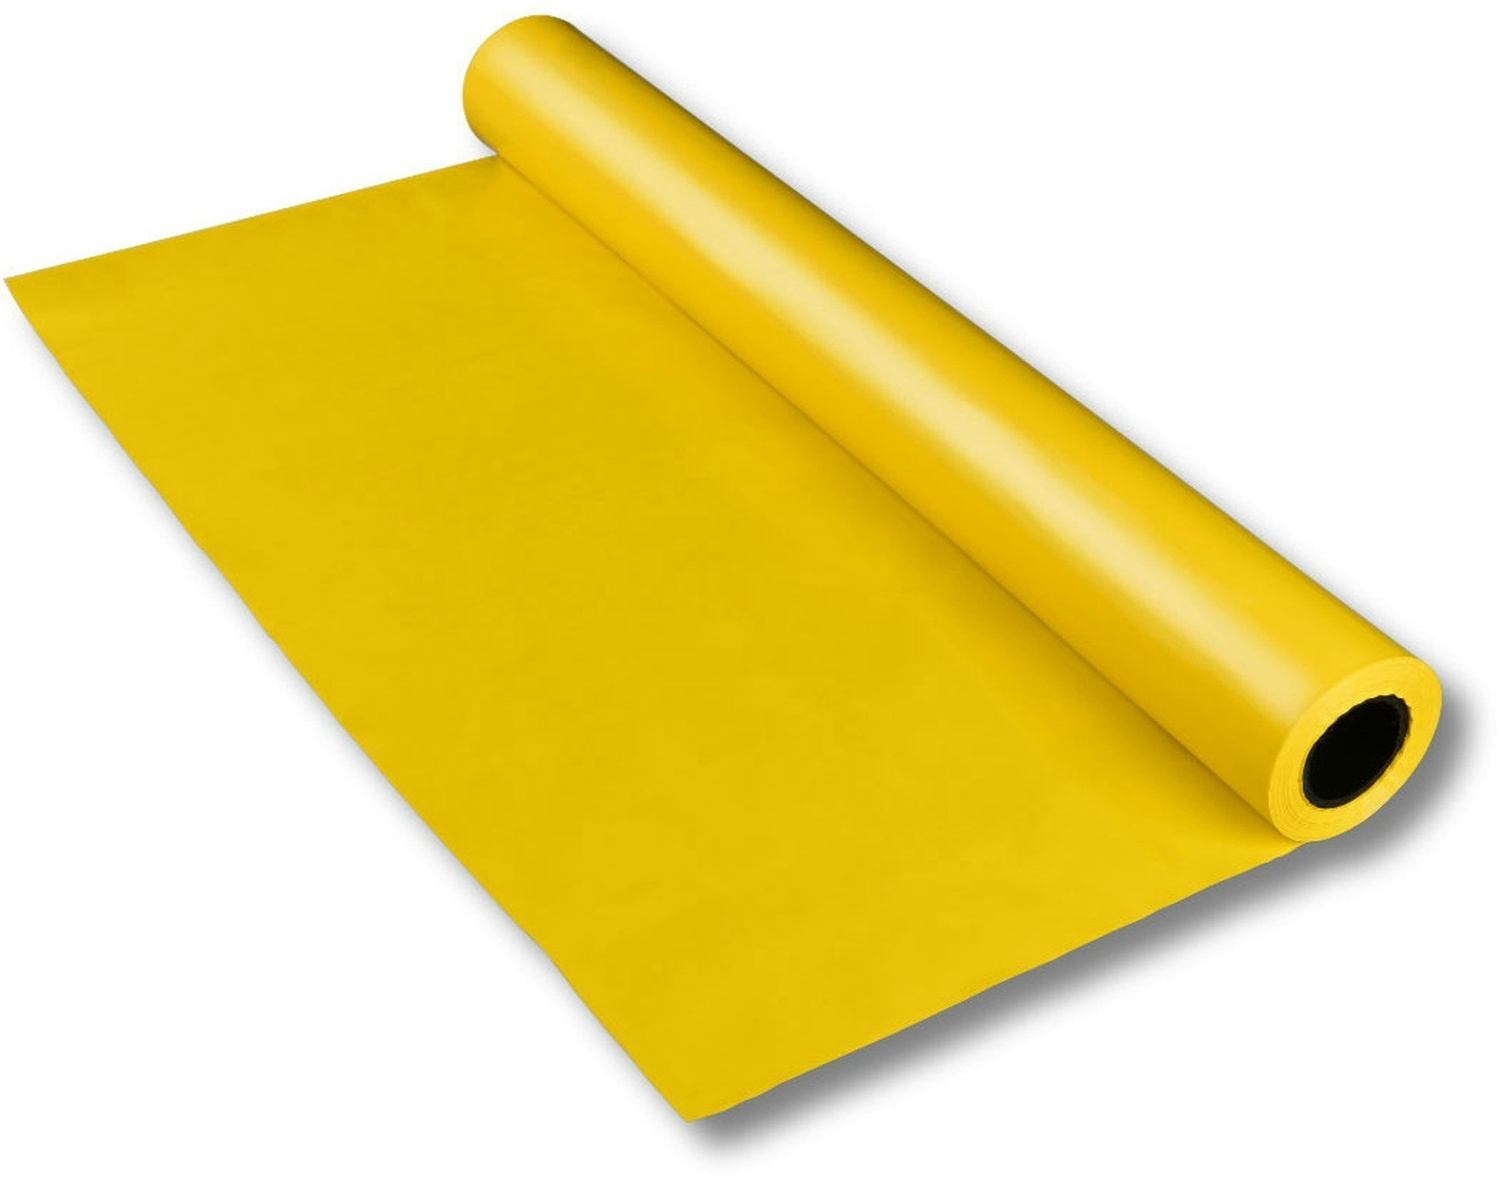 1x LDPE-Folie Dekofolie Tischdecke gelb opak 2300mm x 50m 100my